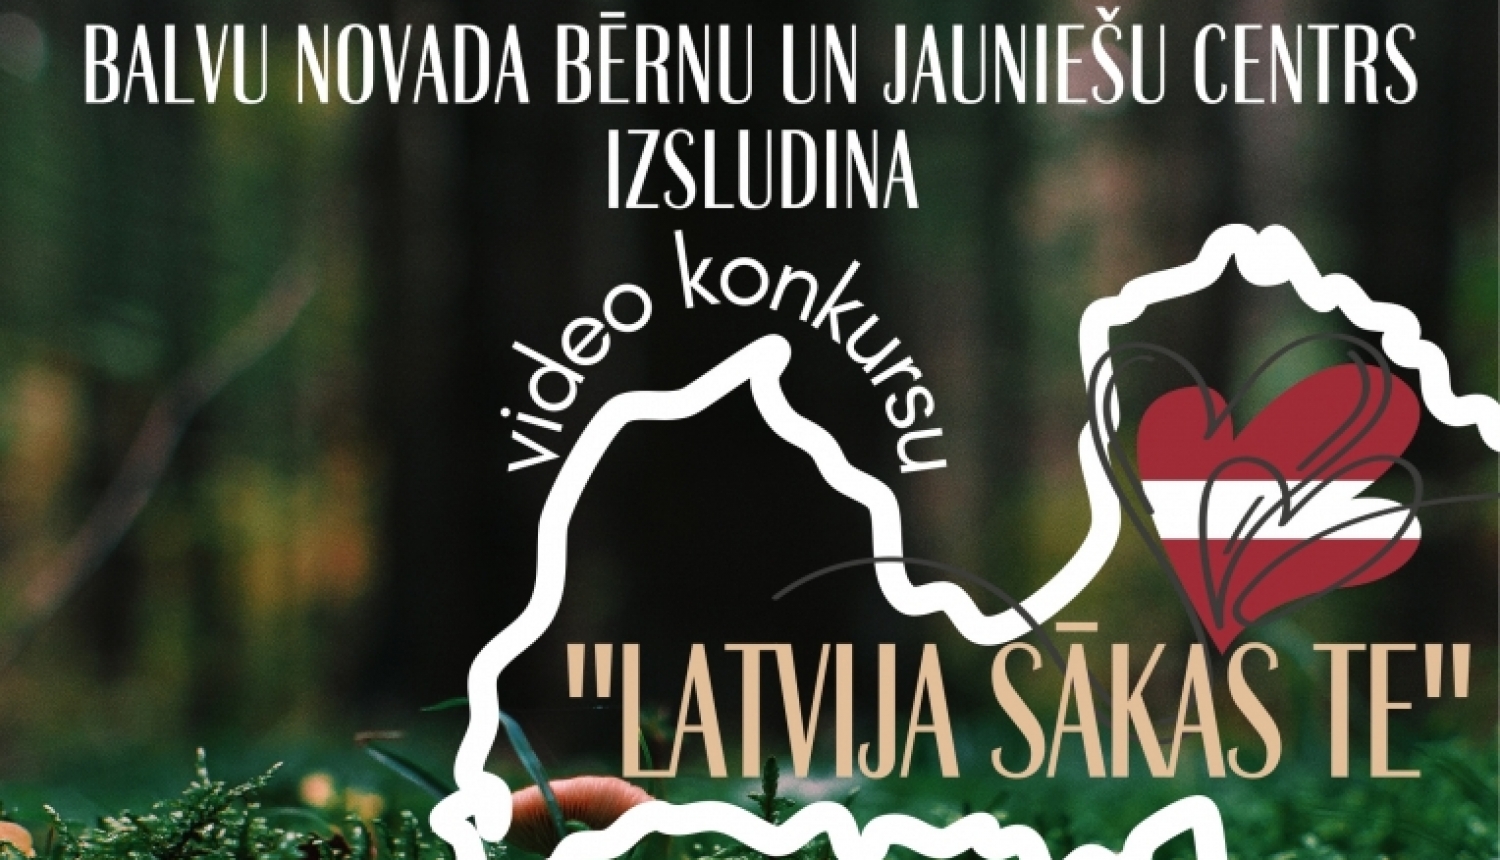 Izsludināts video konkurss “Latvija sākas TE!”